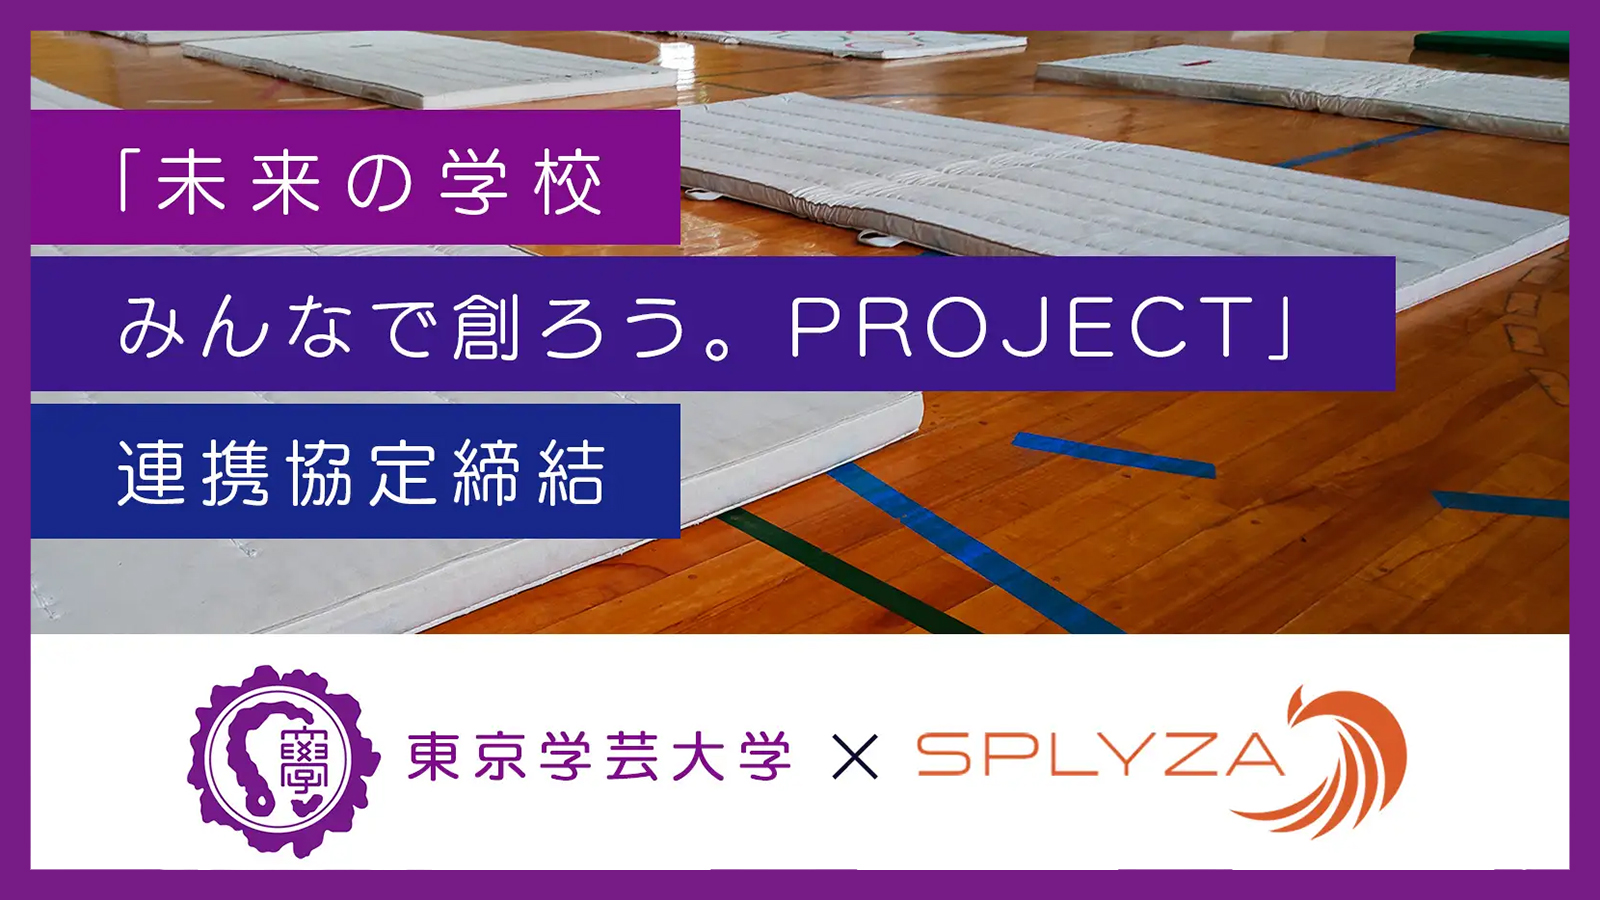 東京学芸大学と株式会社SPLYZAが新しい公教育の創造をめざし連携協定を締結